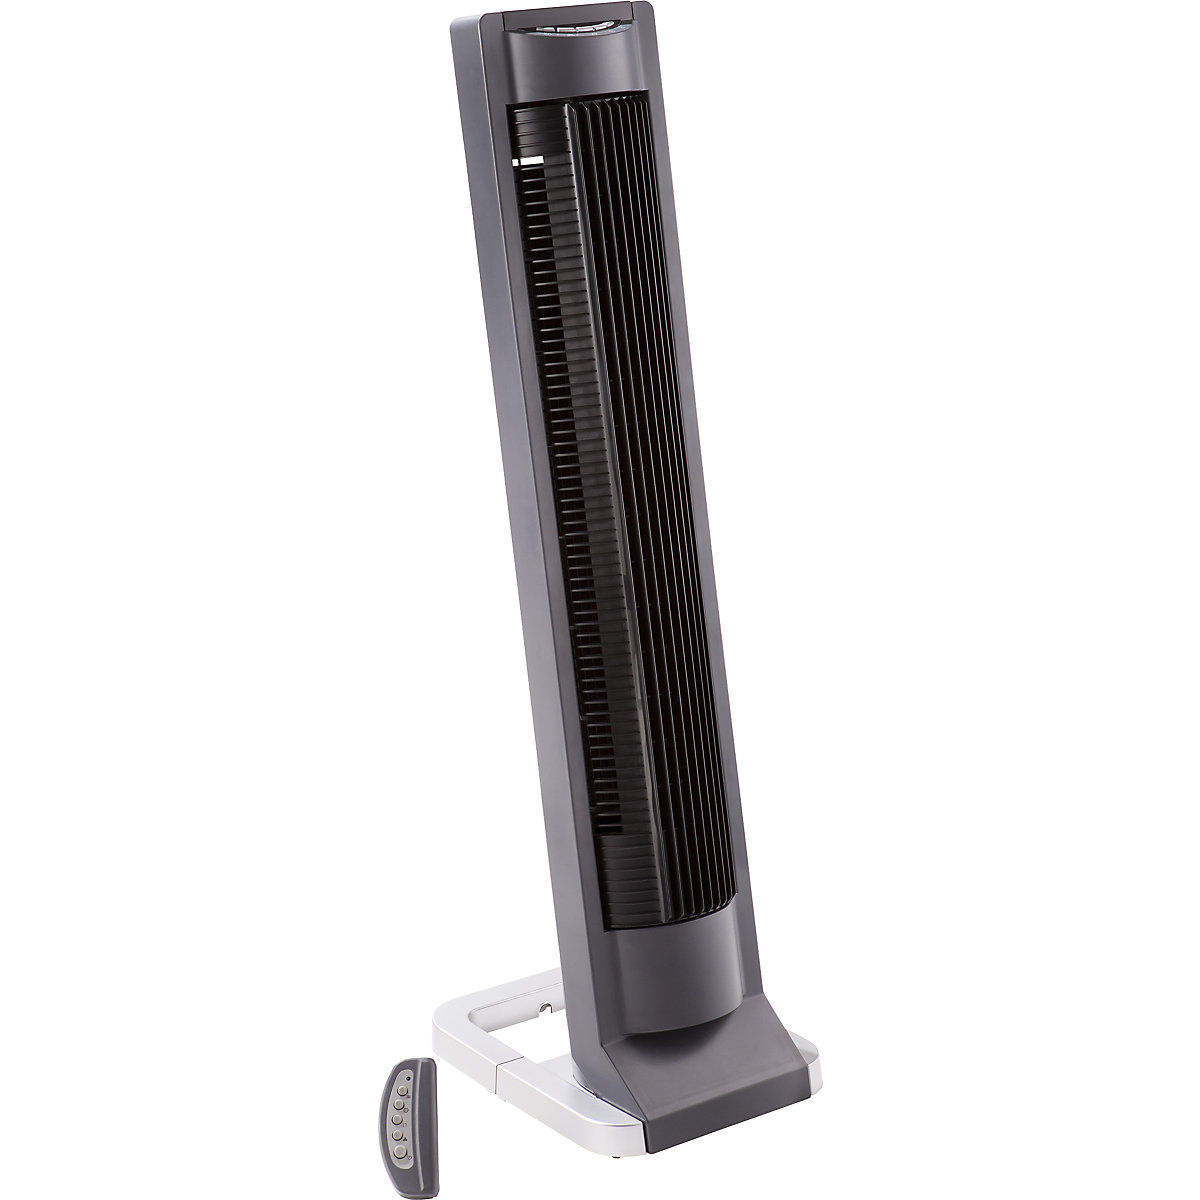 Ventilatore a colonna con telecomando a infrarossi: alt. x largh. x prof.  865 x 235 x 280 mm